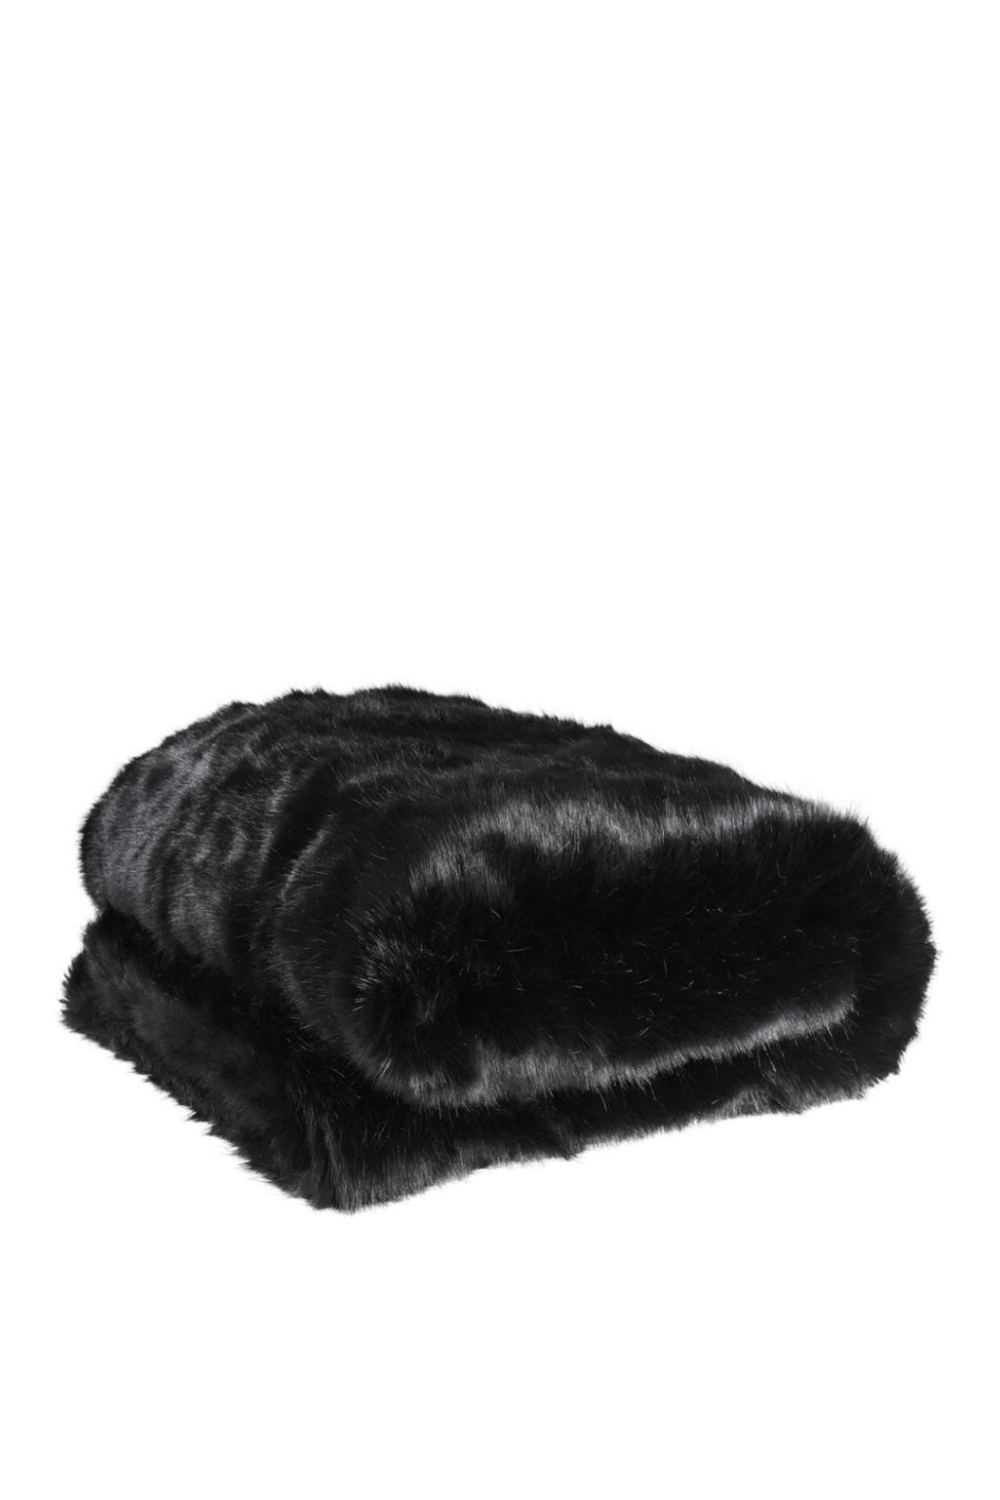 Black Fur Throw Blanket For Sofa or Bed - Eichholtz Alaska | OROA